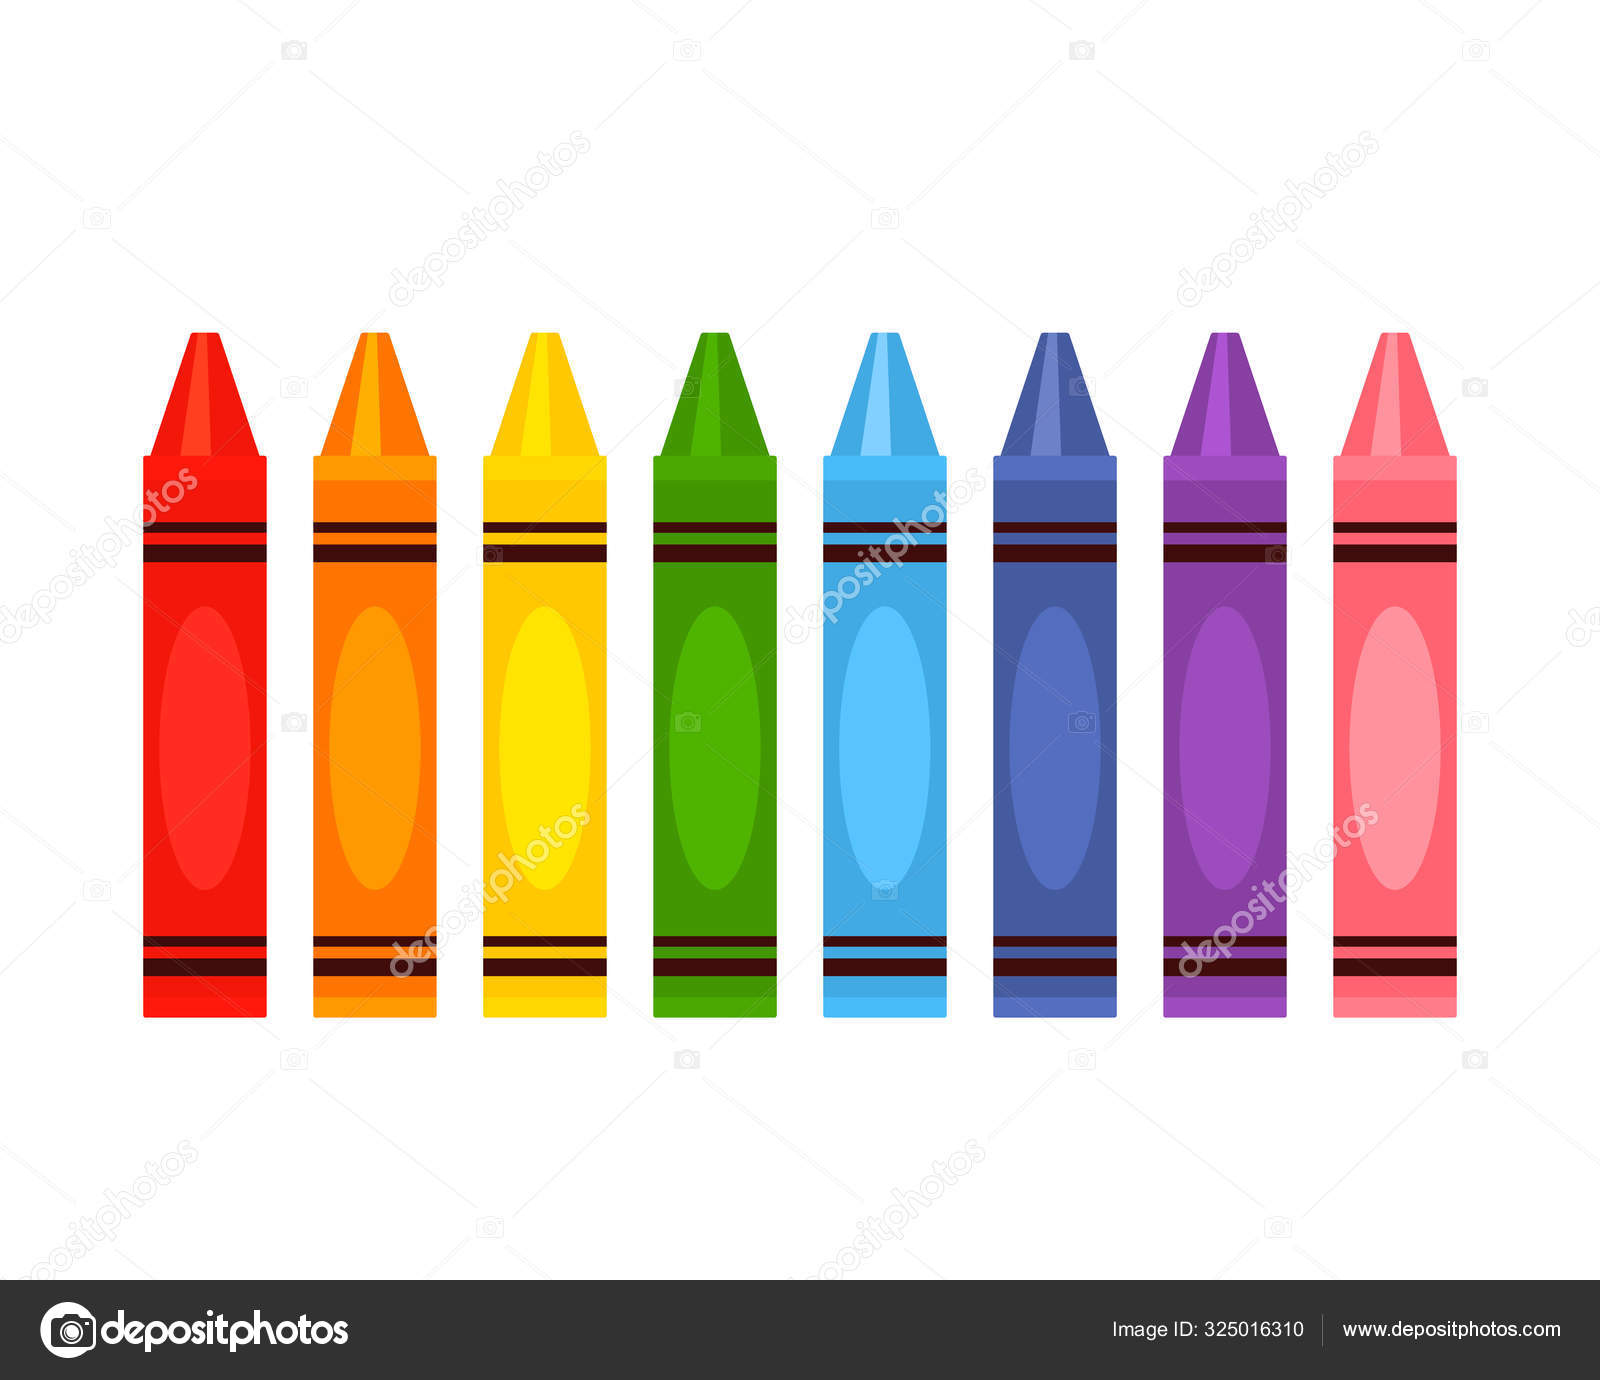 Crayola imágenes de stock de arte vectorial | Depositphotos